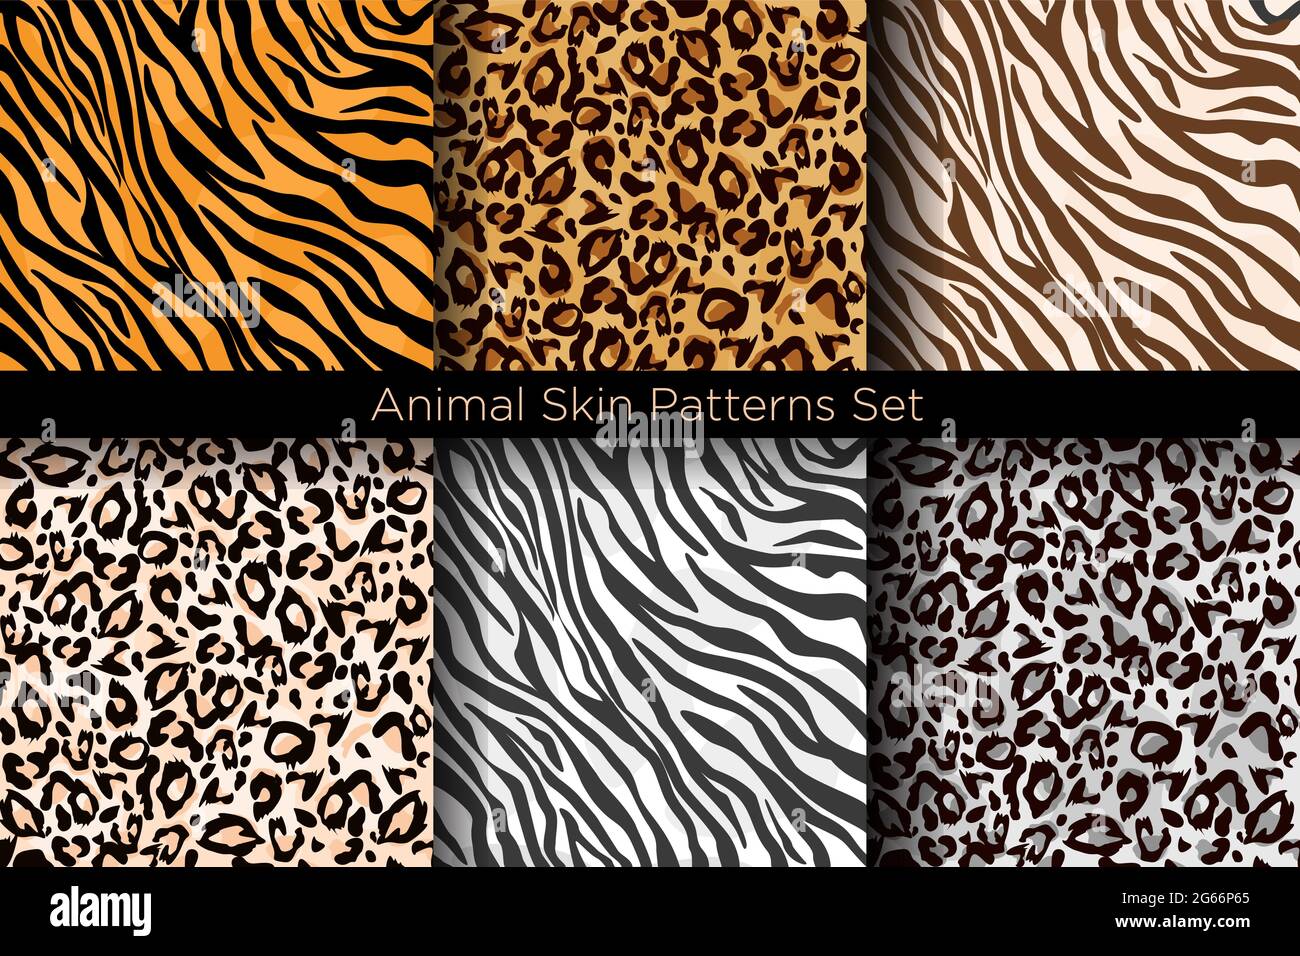 Vektorgrafik Satz von Tier nahtlose Drucke. Tiger- und Leopardenmuster Kollektion in verschiedenen Farben im flachen Stil. Stock Vektor